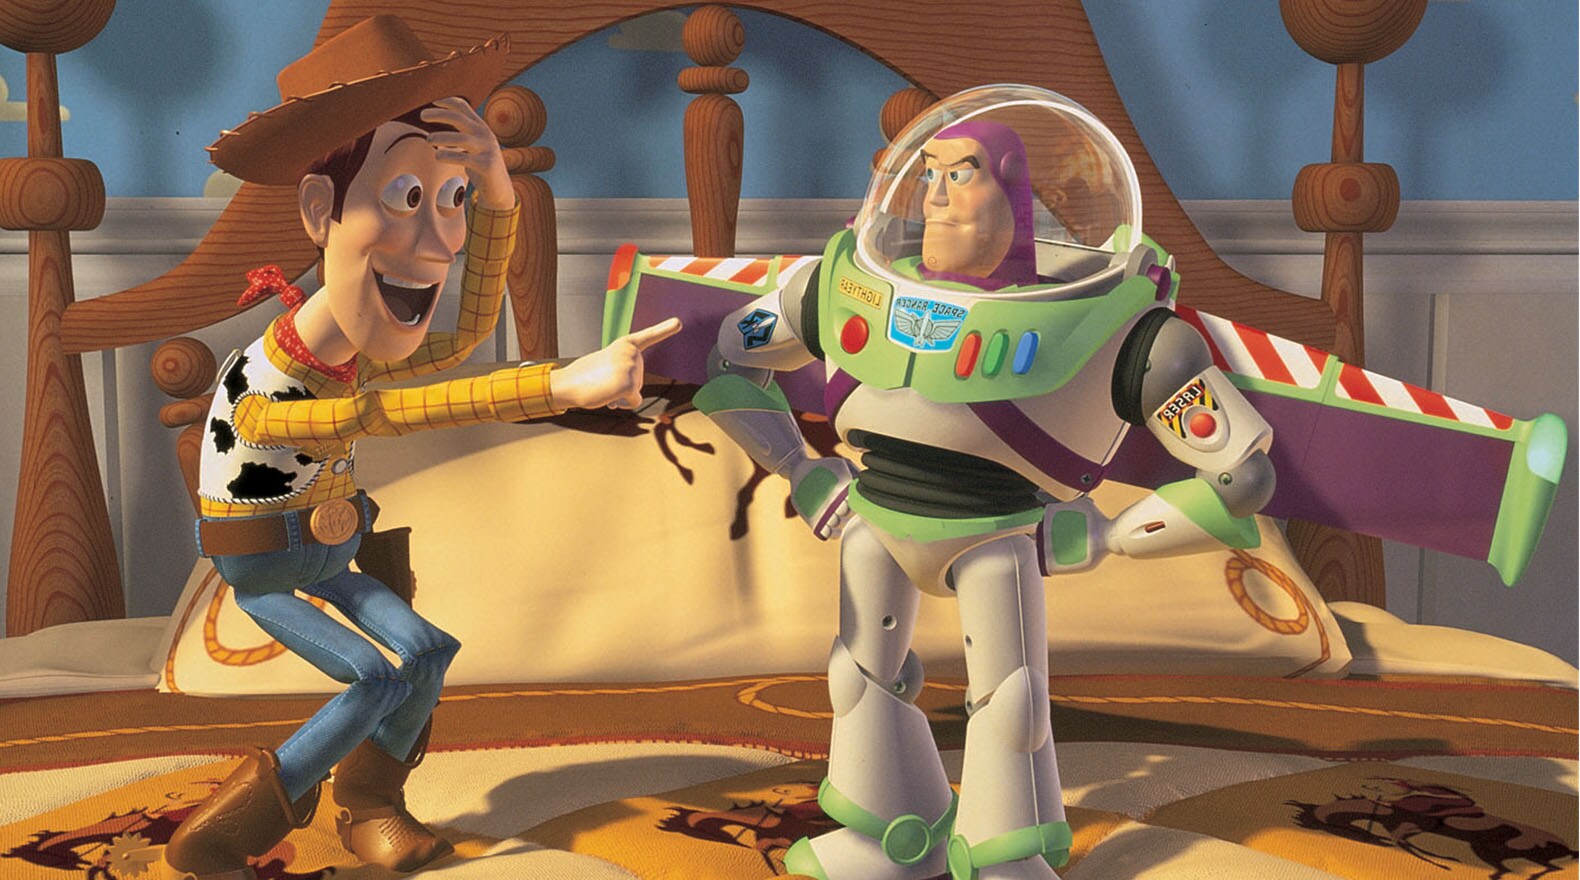 Toy Story en la vida Real! 🚀 Disney juguetes Playset 🎈 Toy Story 2 3 4 🤠  acción viva Toy Story 